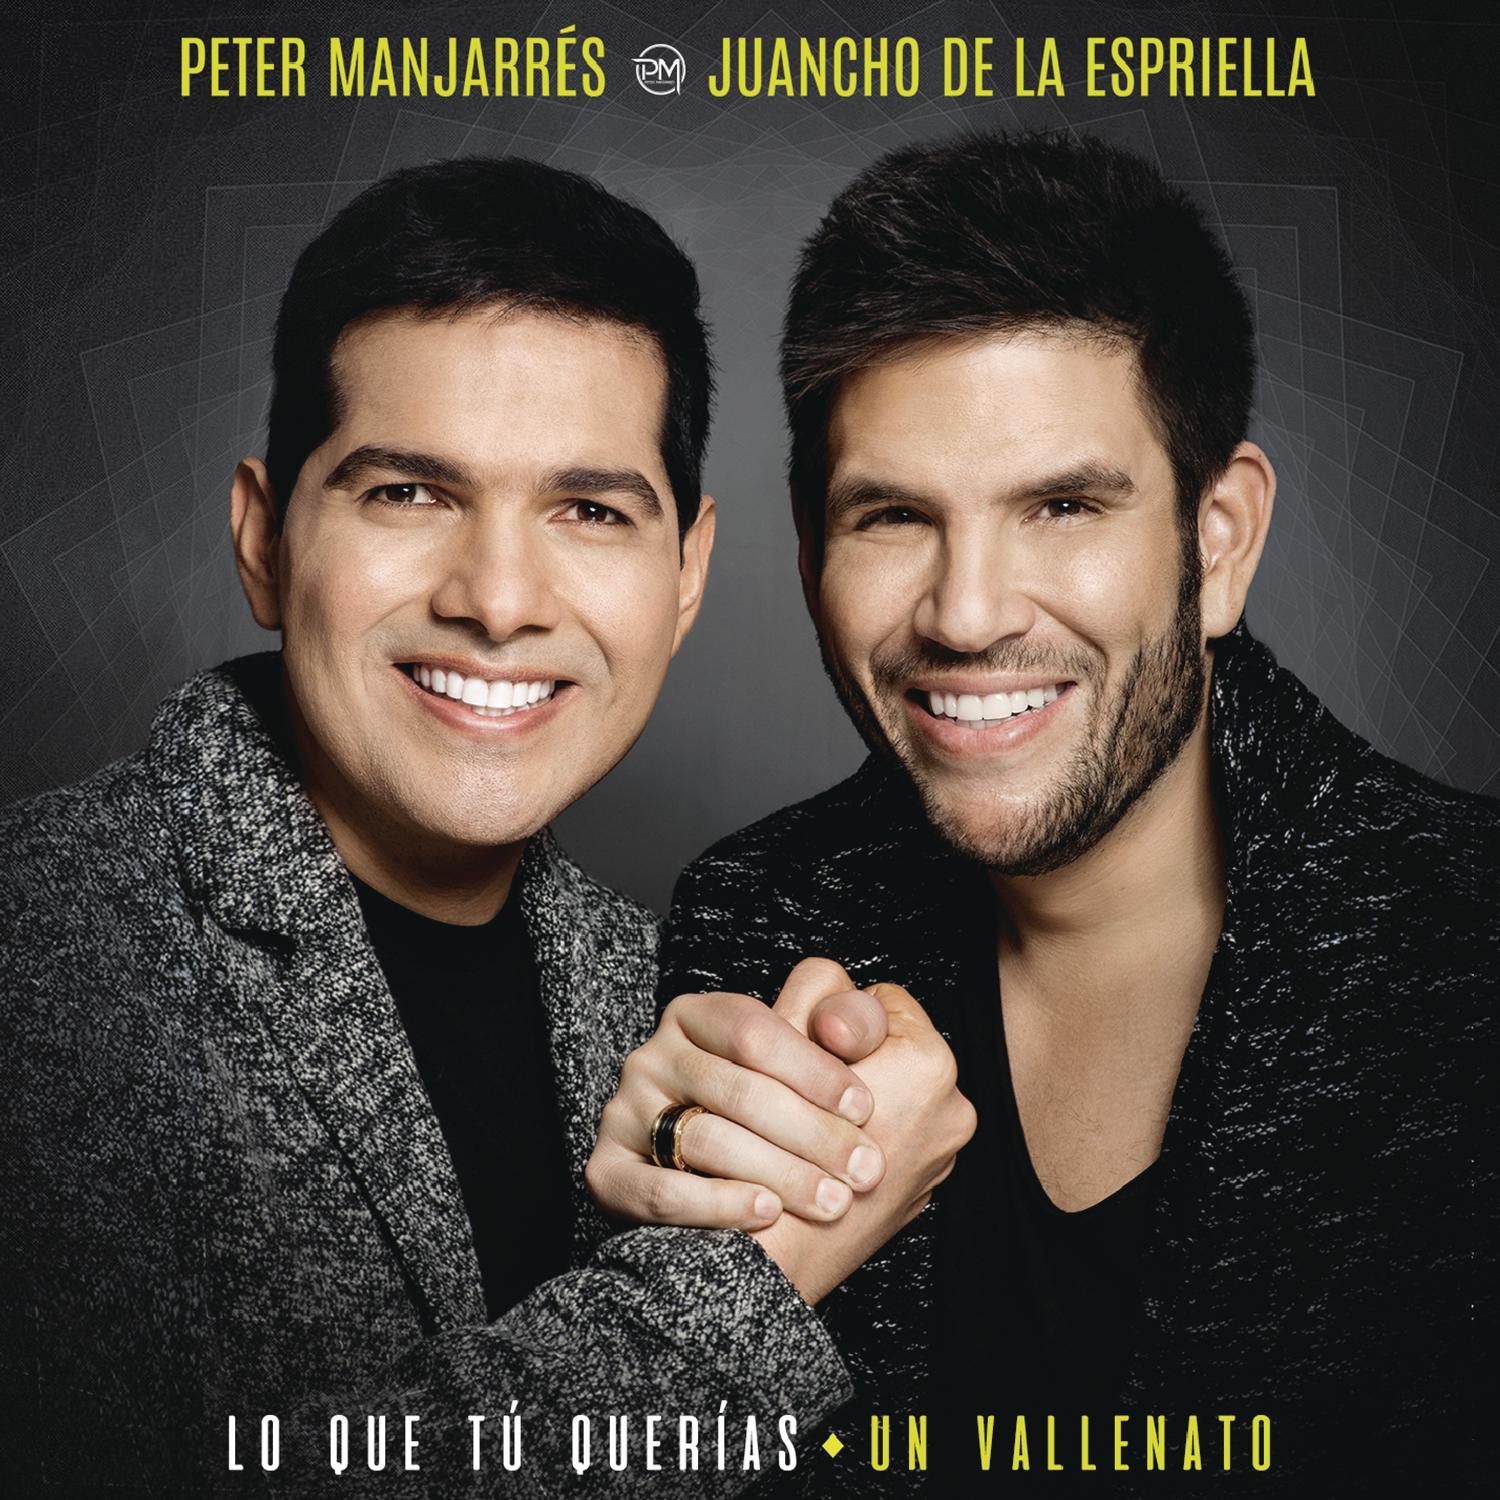 Descargar Lo que tu querías, un vallenato CD COMPLETO Peter Manjarres & Juancho 